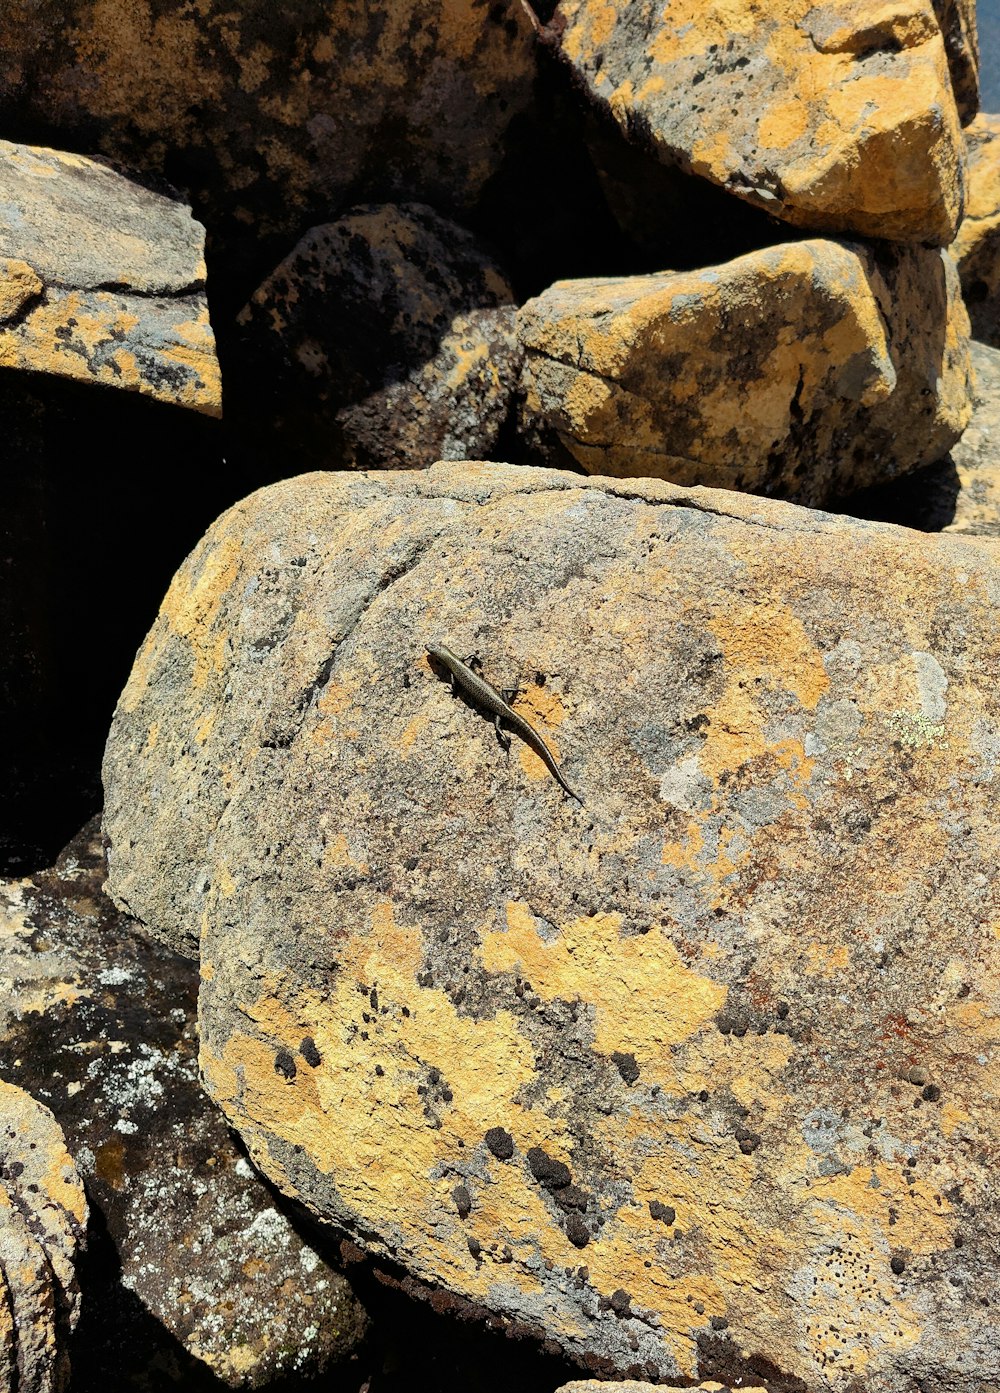 una lucertola seduta in cima a una roccia ricoperta di licheni